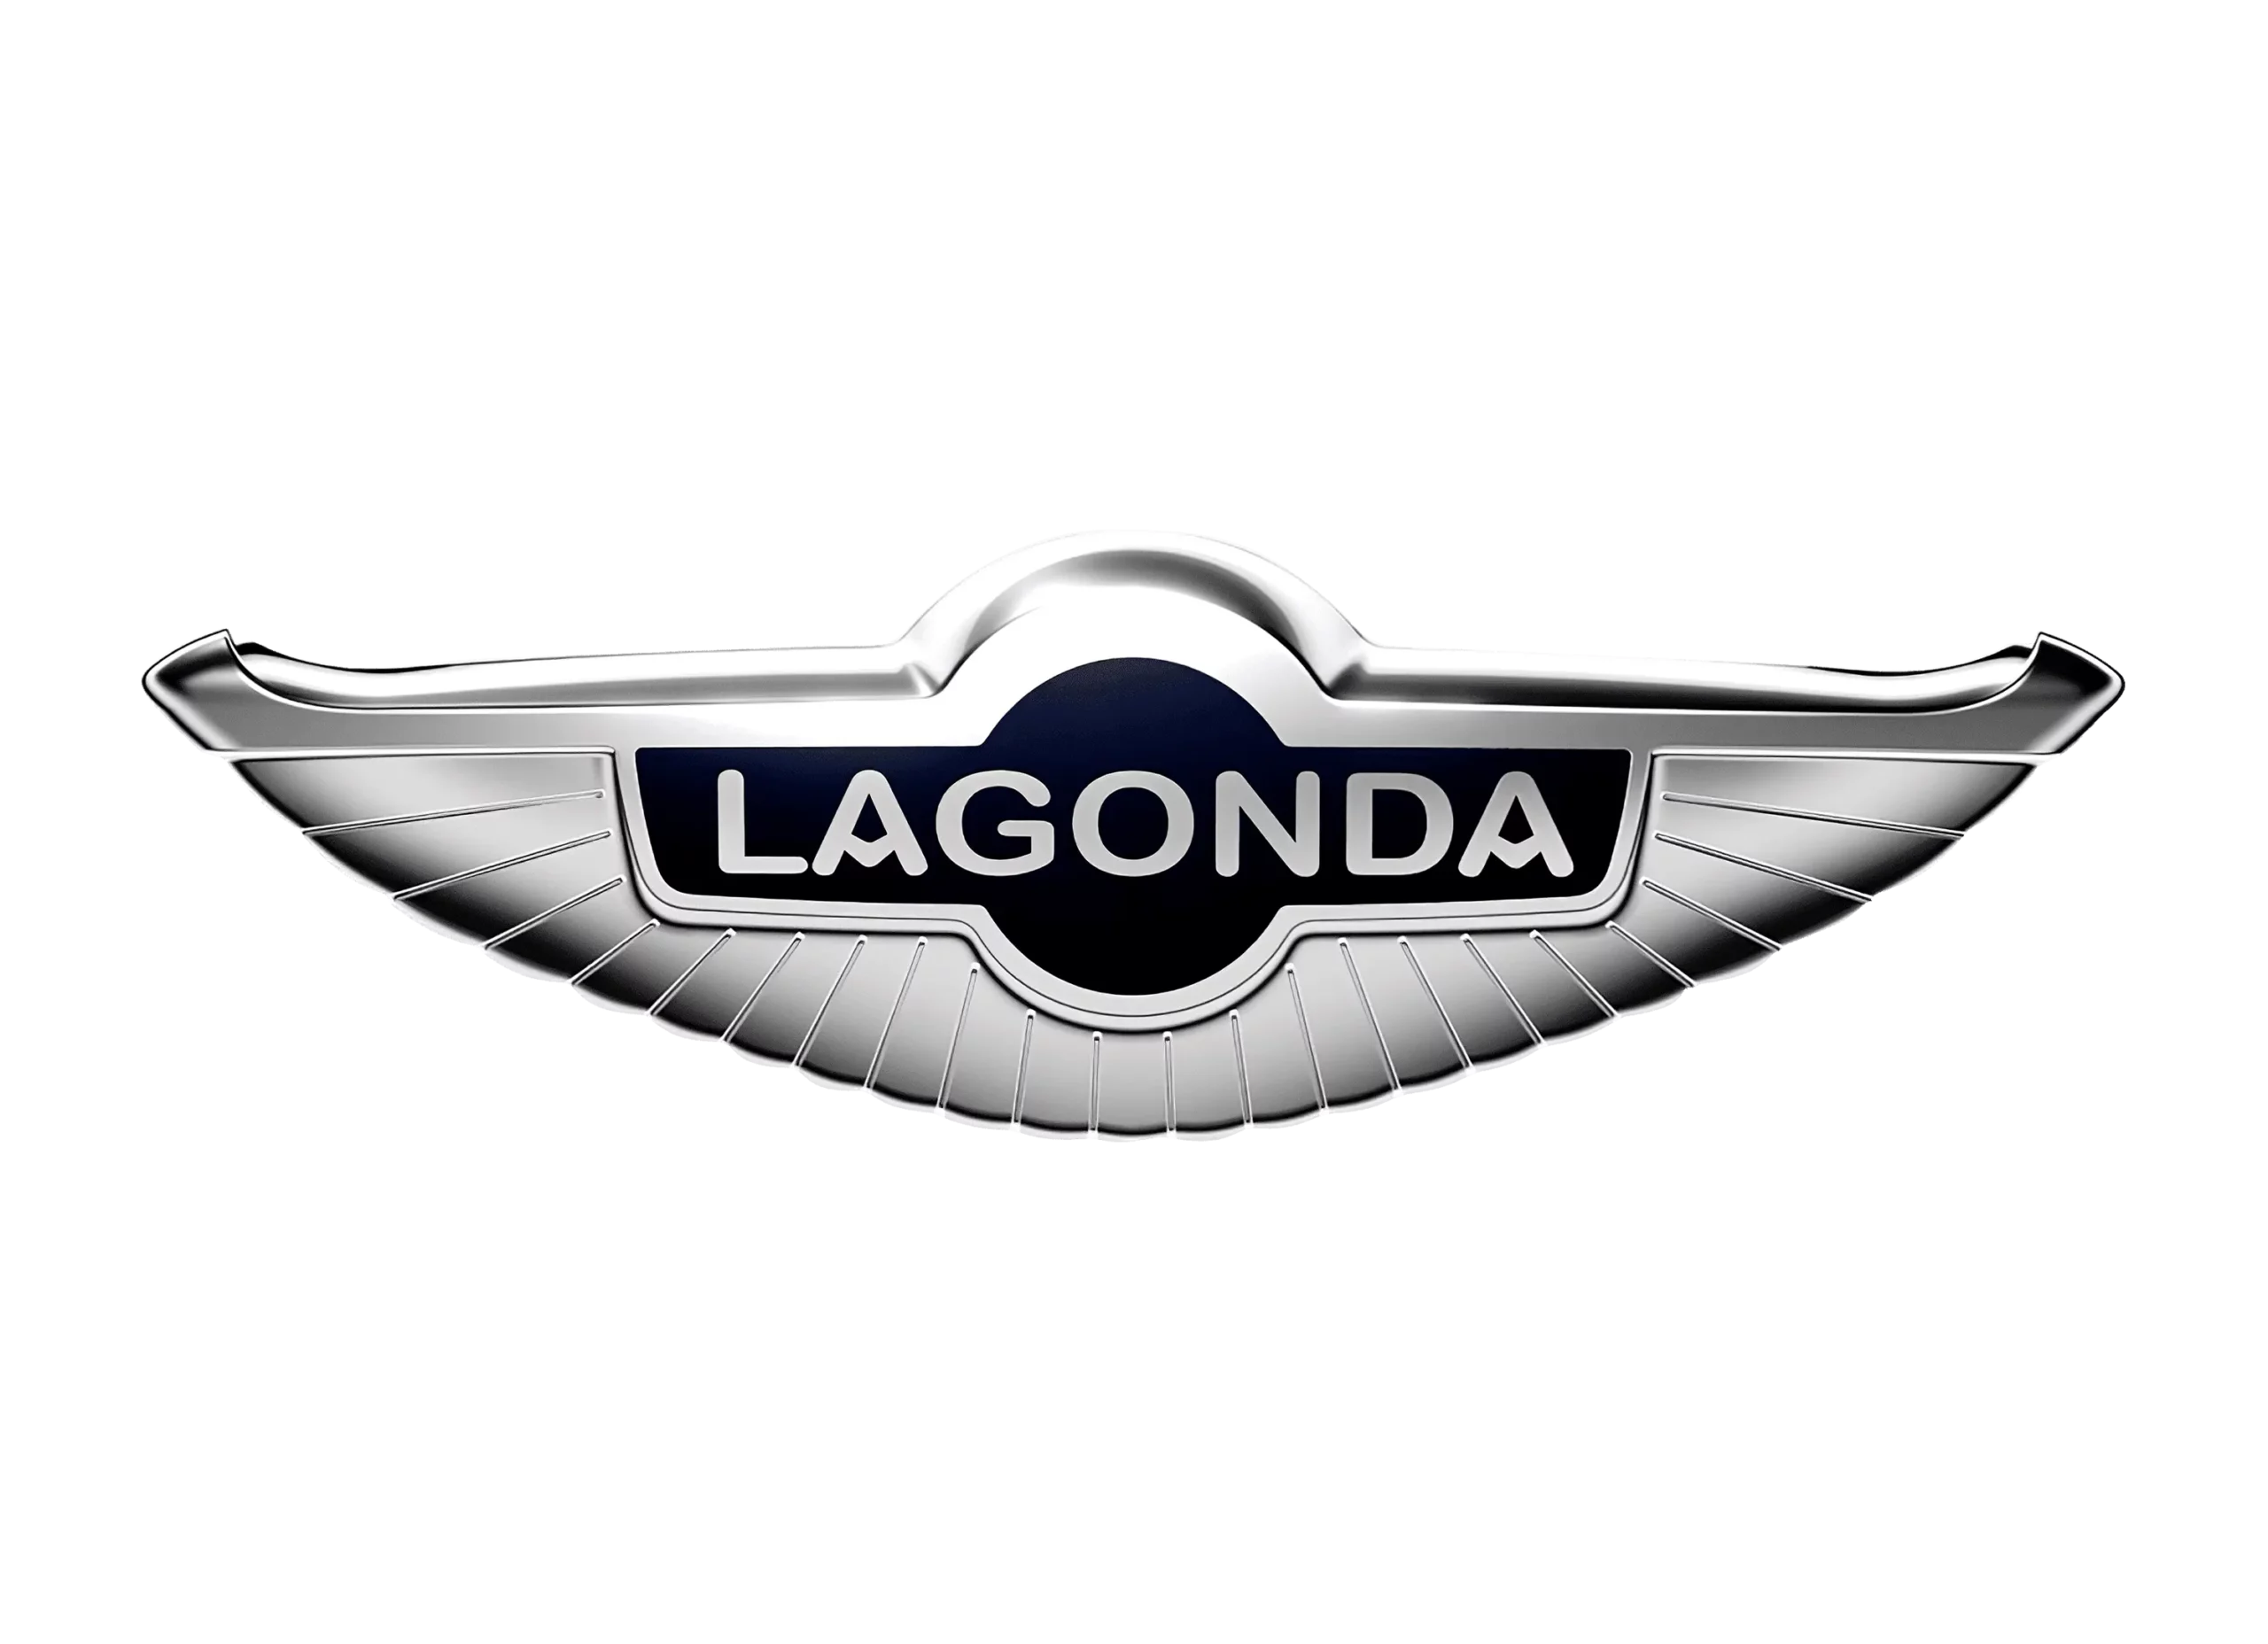 Lagonda logo 2010-present